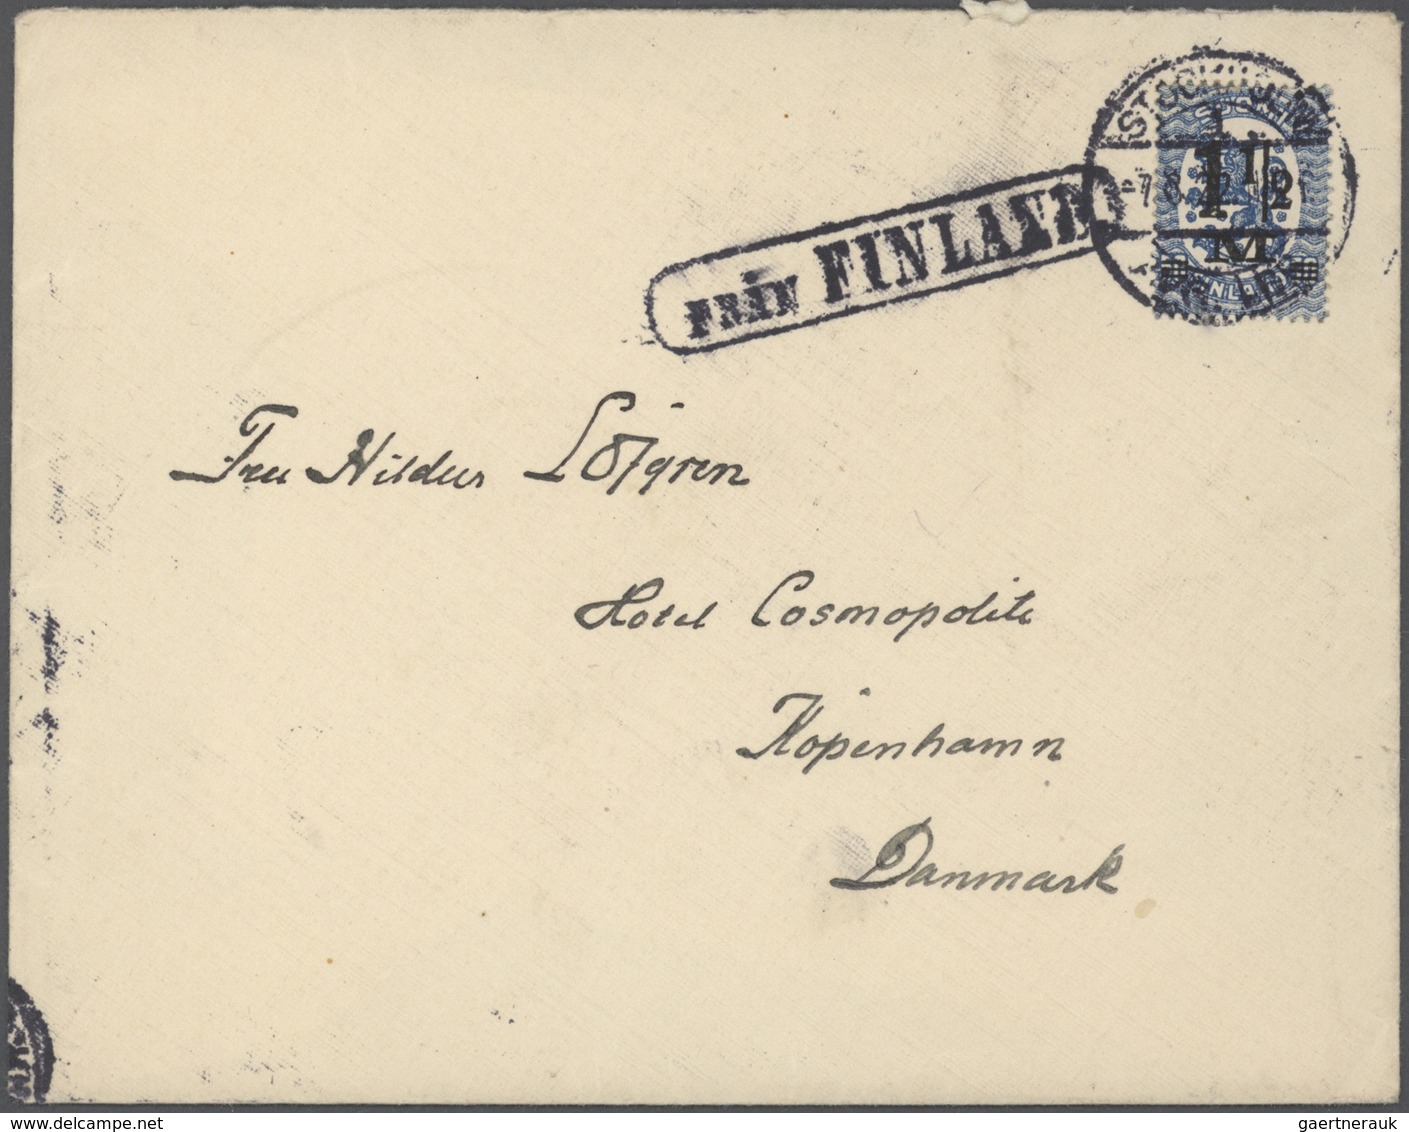 Schweden: 1850/1960 (ca) ungefähr 460 Belege - größtenteils Bedarf, viele Briefe, Formulare, ... ab